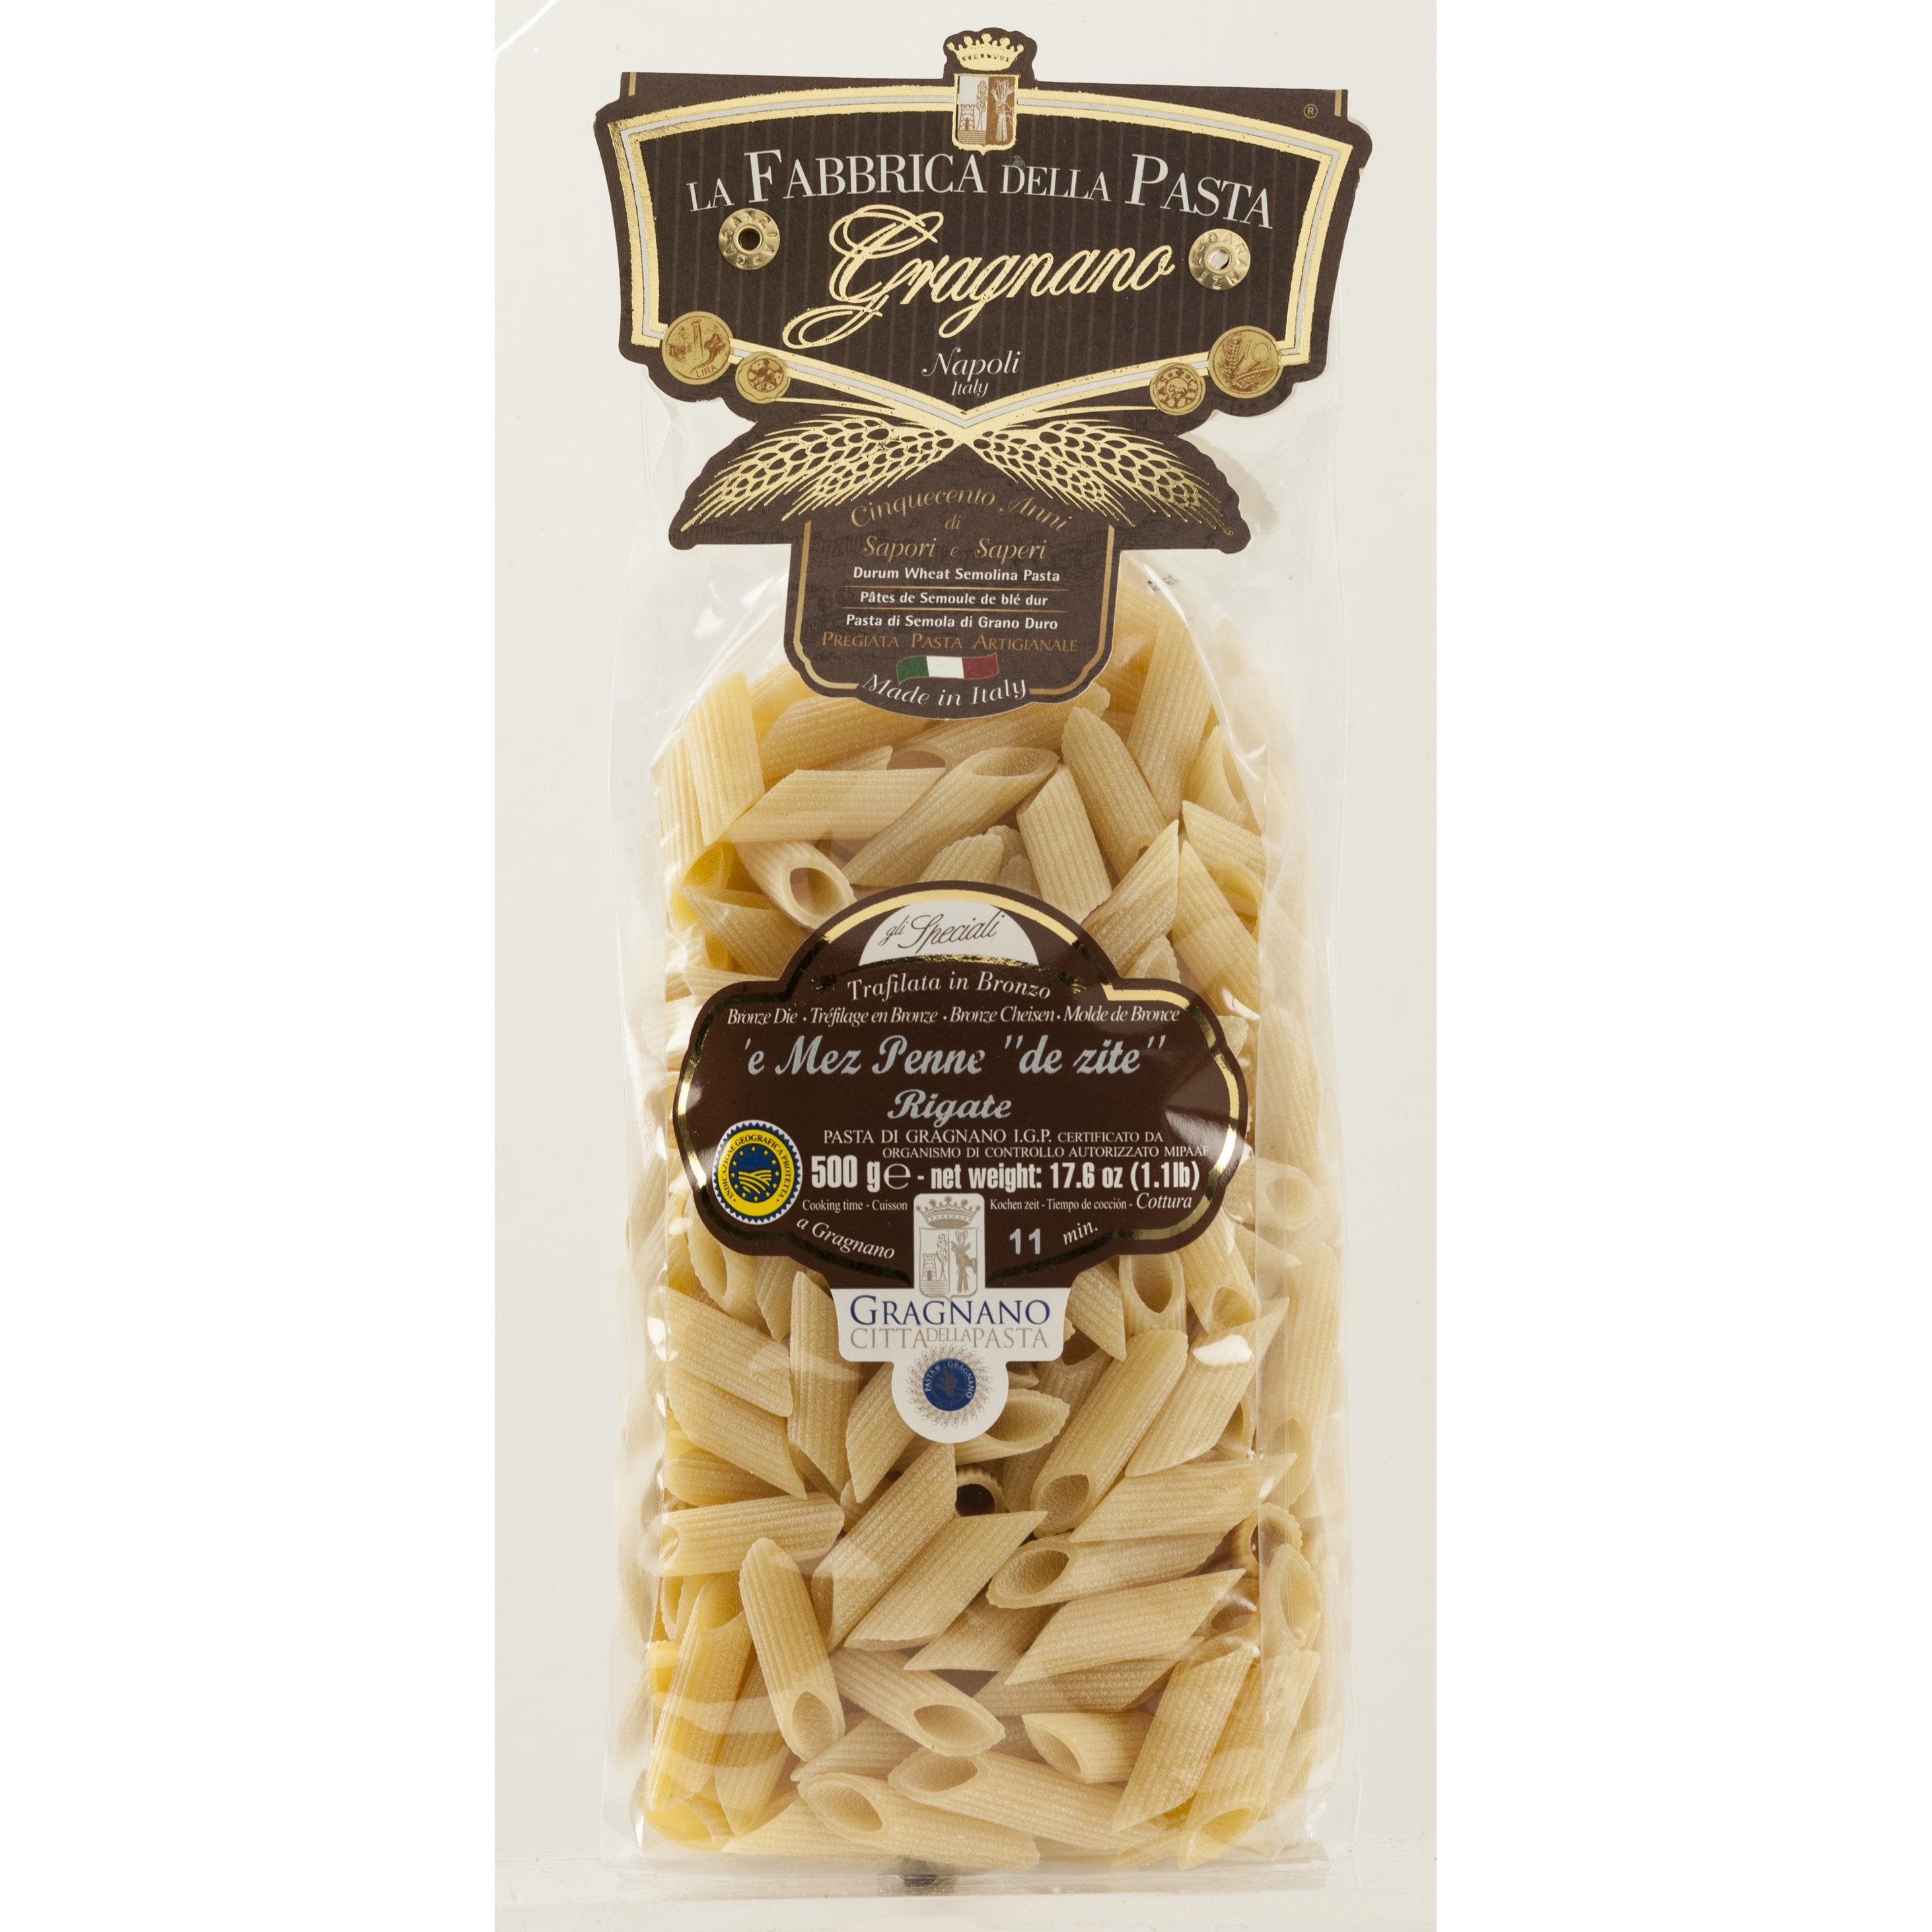 La Fabbrica Della Pasta le Mezze Penne de zite Rigate, #524, 17.6 oz |  500g